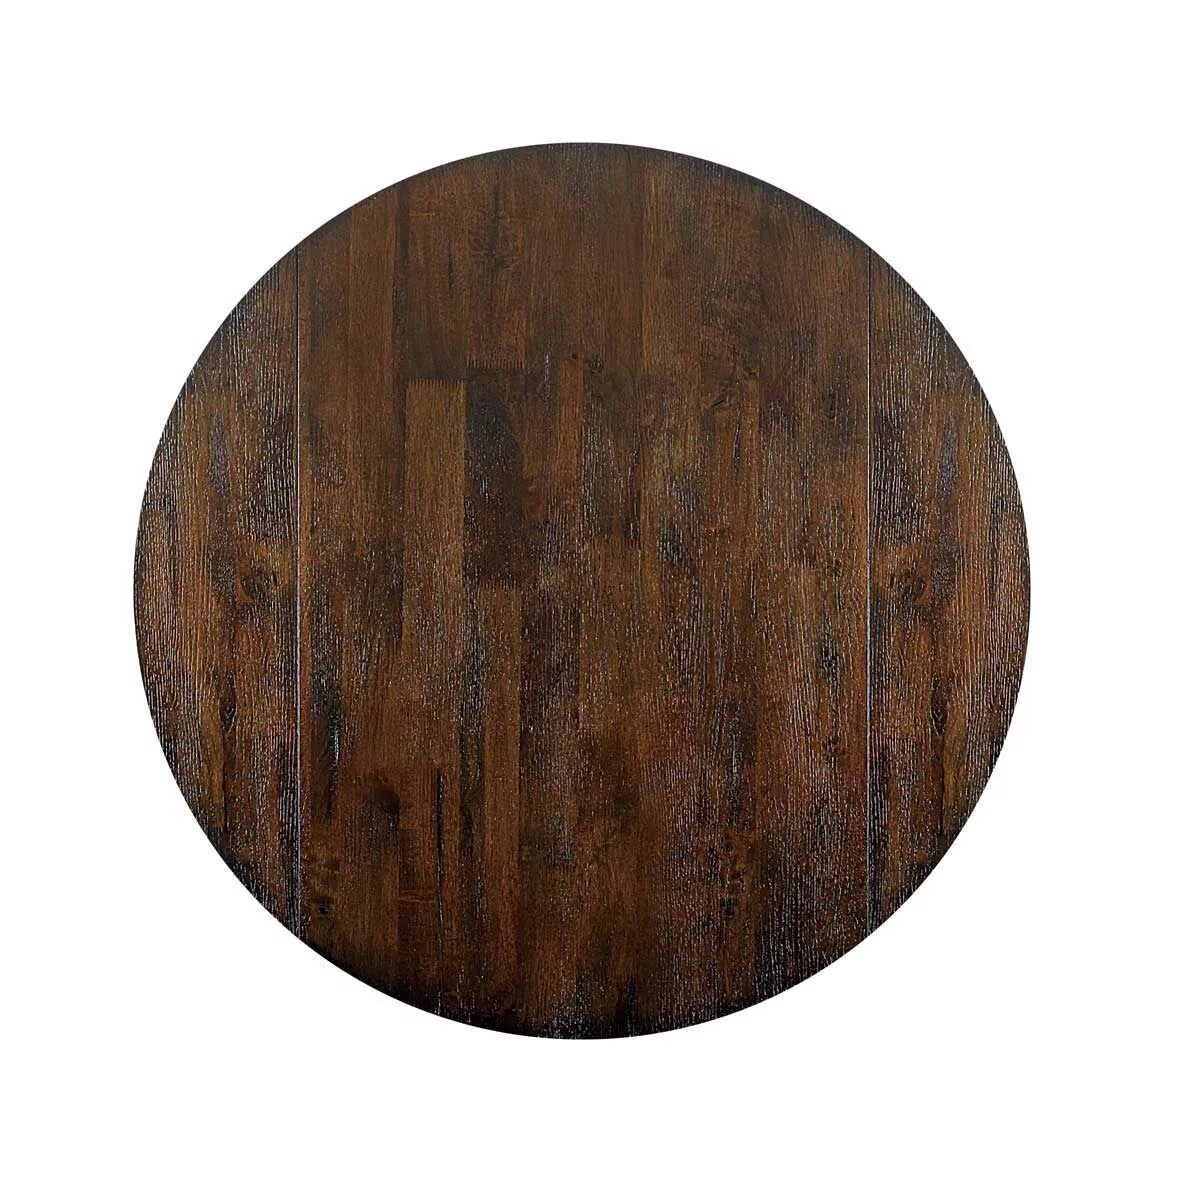 Wooden top. Круглый стол вид сверху. Круглый деревянный стол вид сверху. Круглый столик вид сверху. Текстура круглого стола.